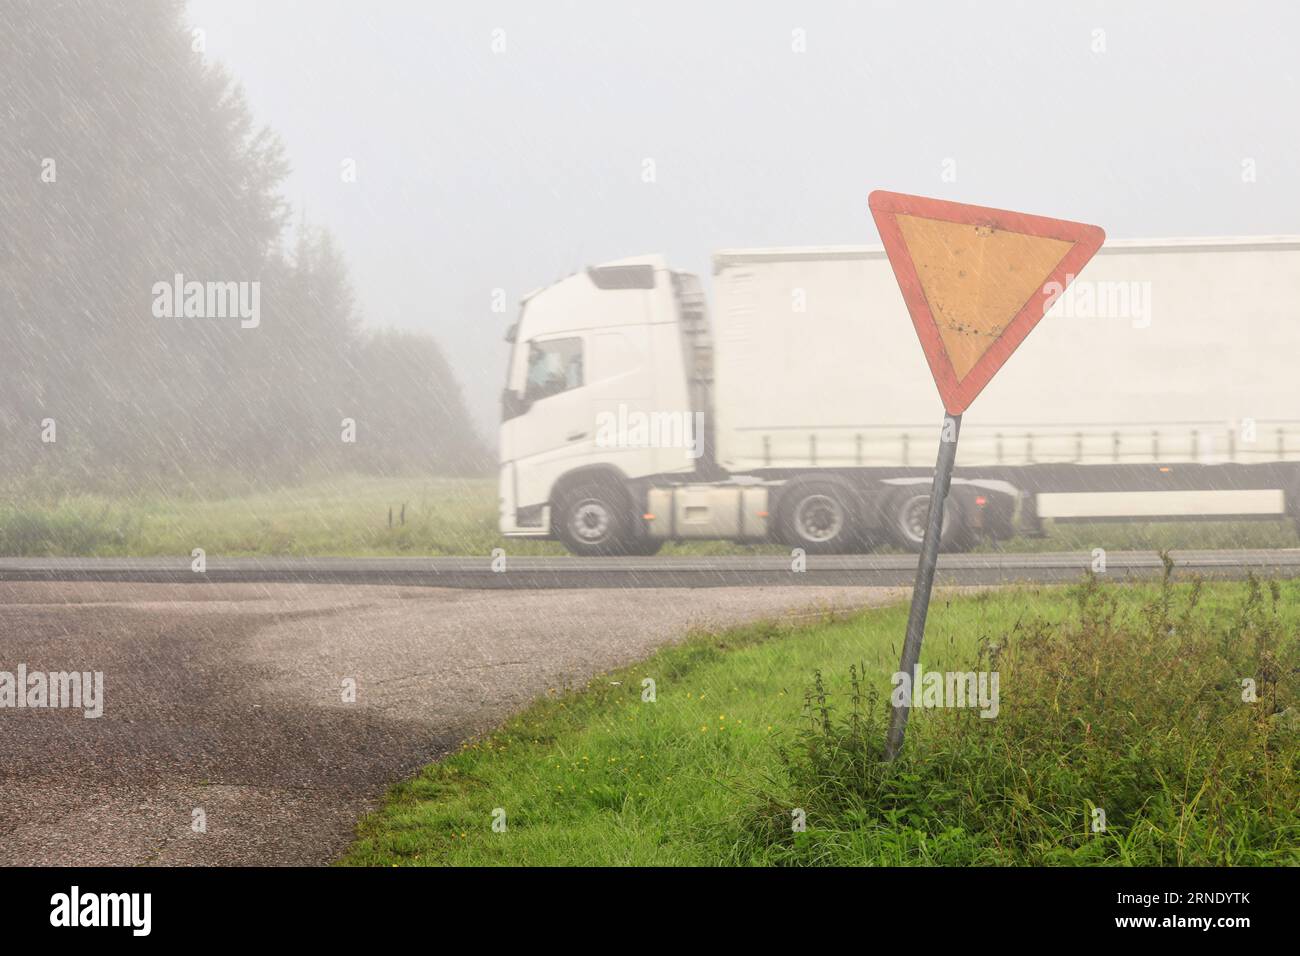 Wegweiser auf einer Landstraße mit weißem Sattelauflieger, der an einem regnerischen, nebligen Tag mit geringer Sicht auf der Autobahn mit Geschwindigkeit vorbeifährt. Stockfoto